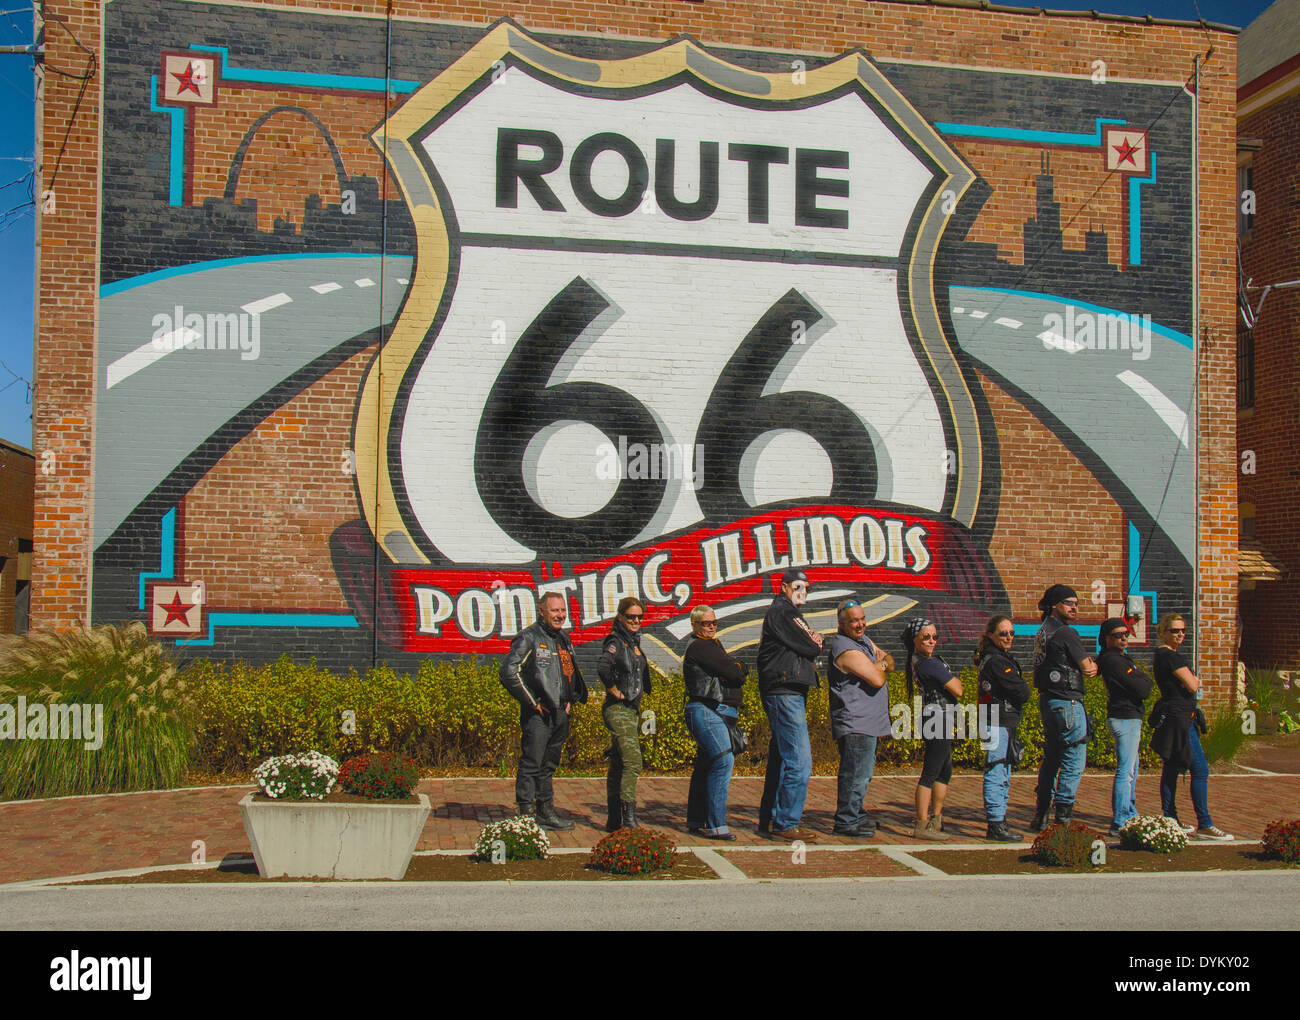 Il coyote Malaga moto club visualizza il percorso 66 murale in Pontiac, Illinois, una città lungo la Route 66 Foto Stock